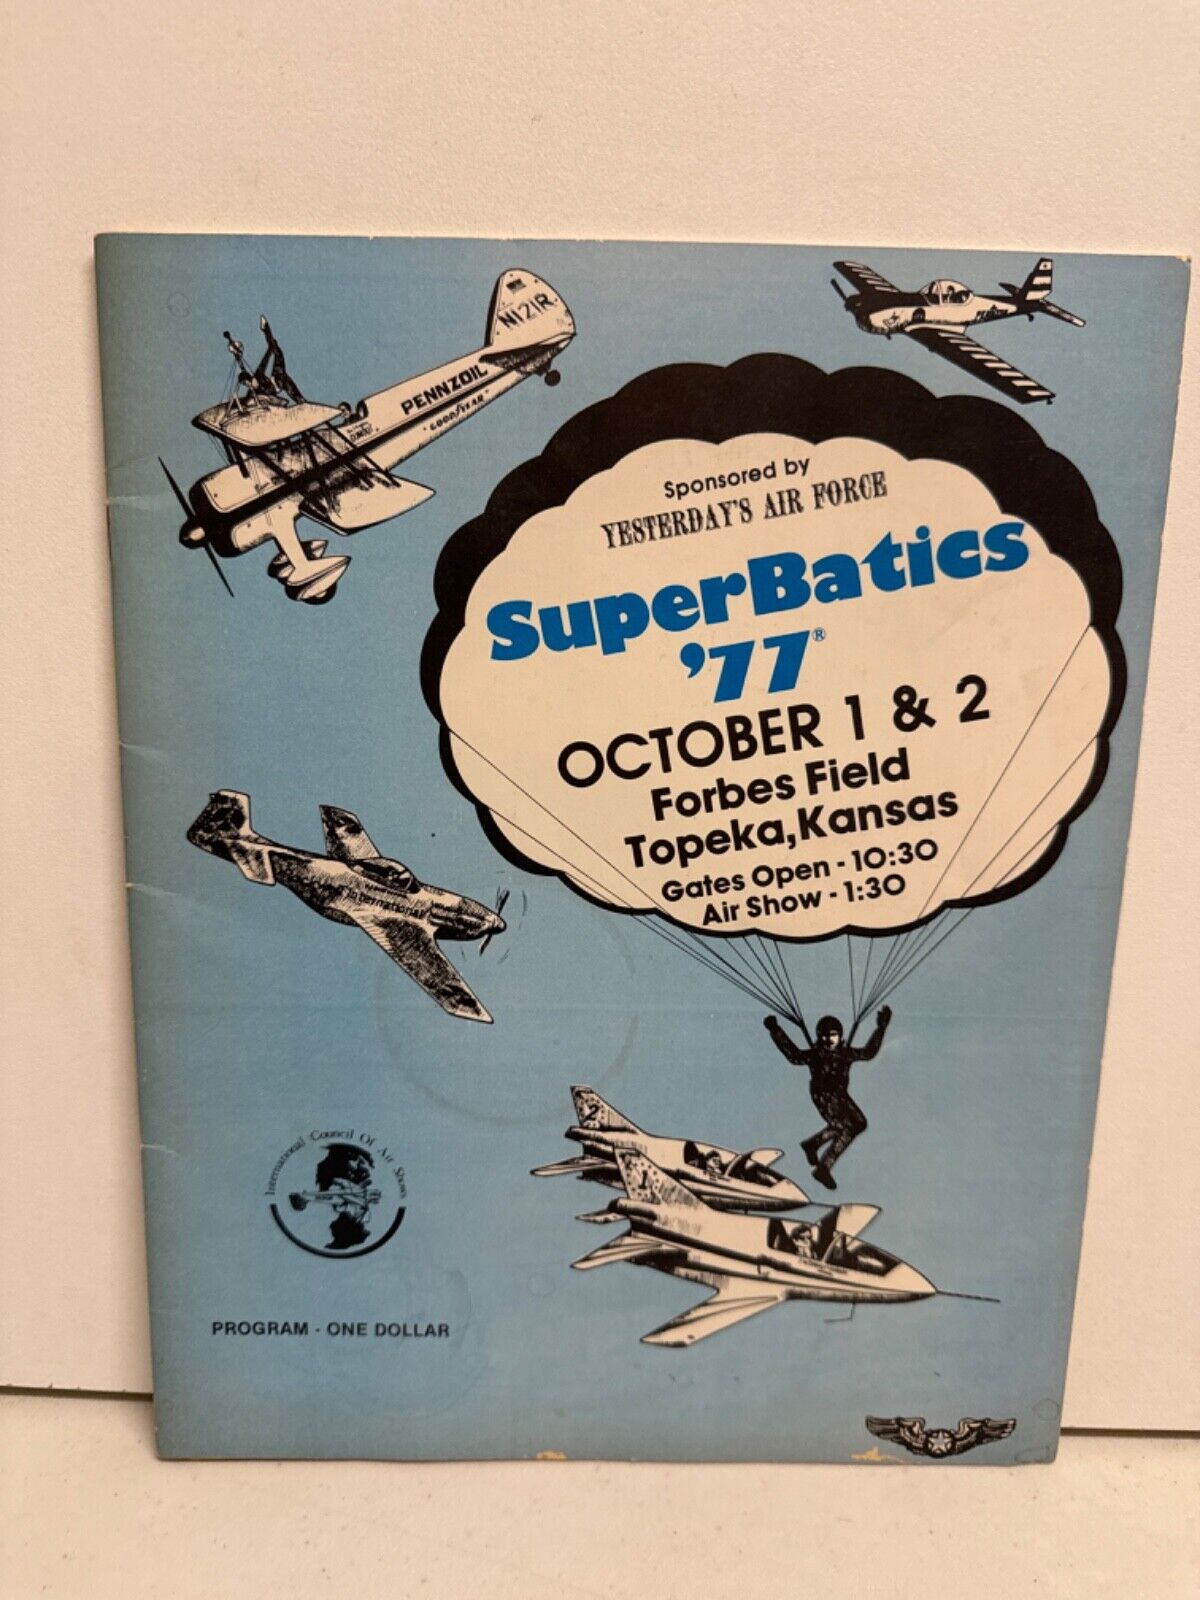 SuperBatics 1977 October 1 & 2 Forbes Field Kansas Program